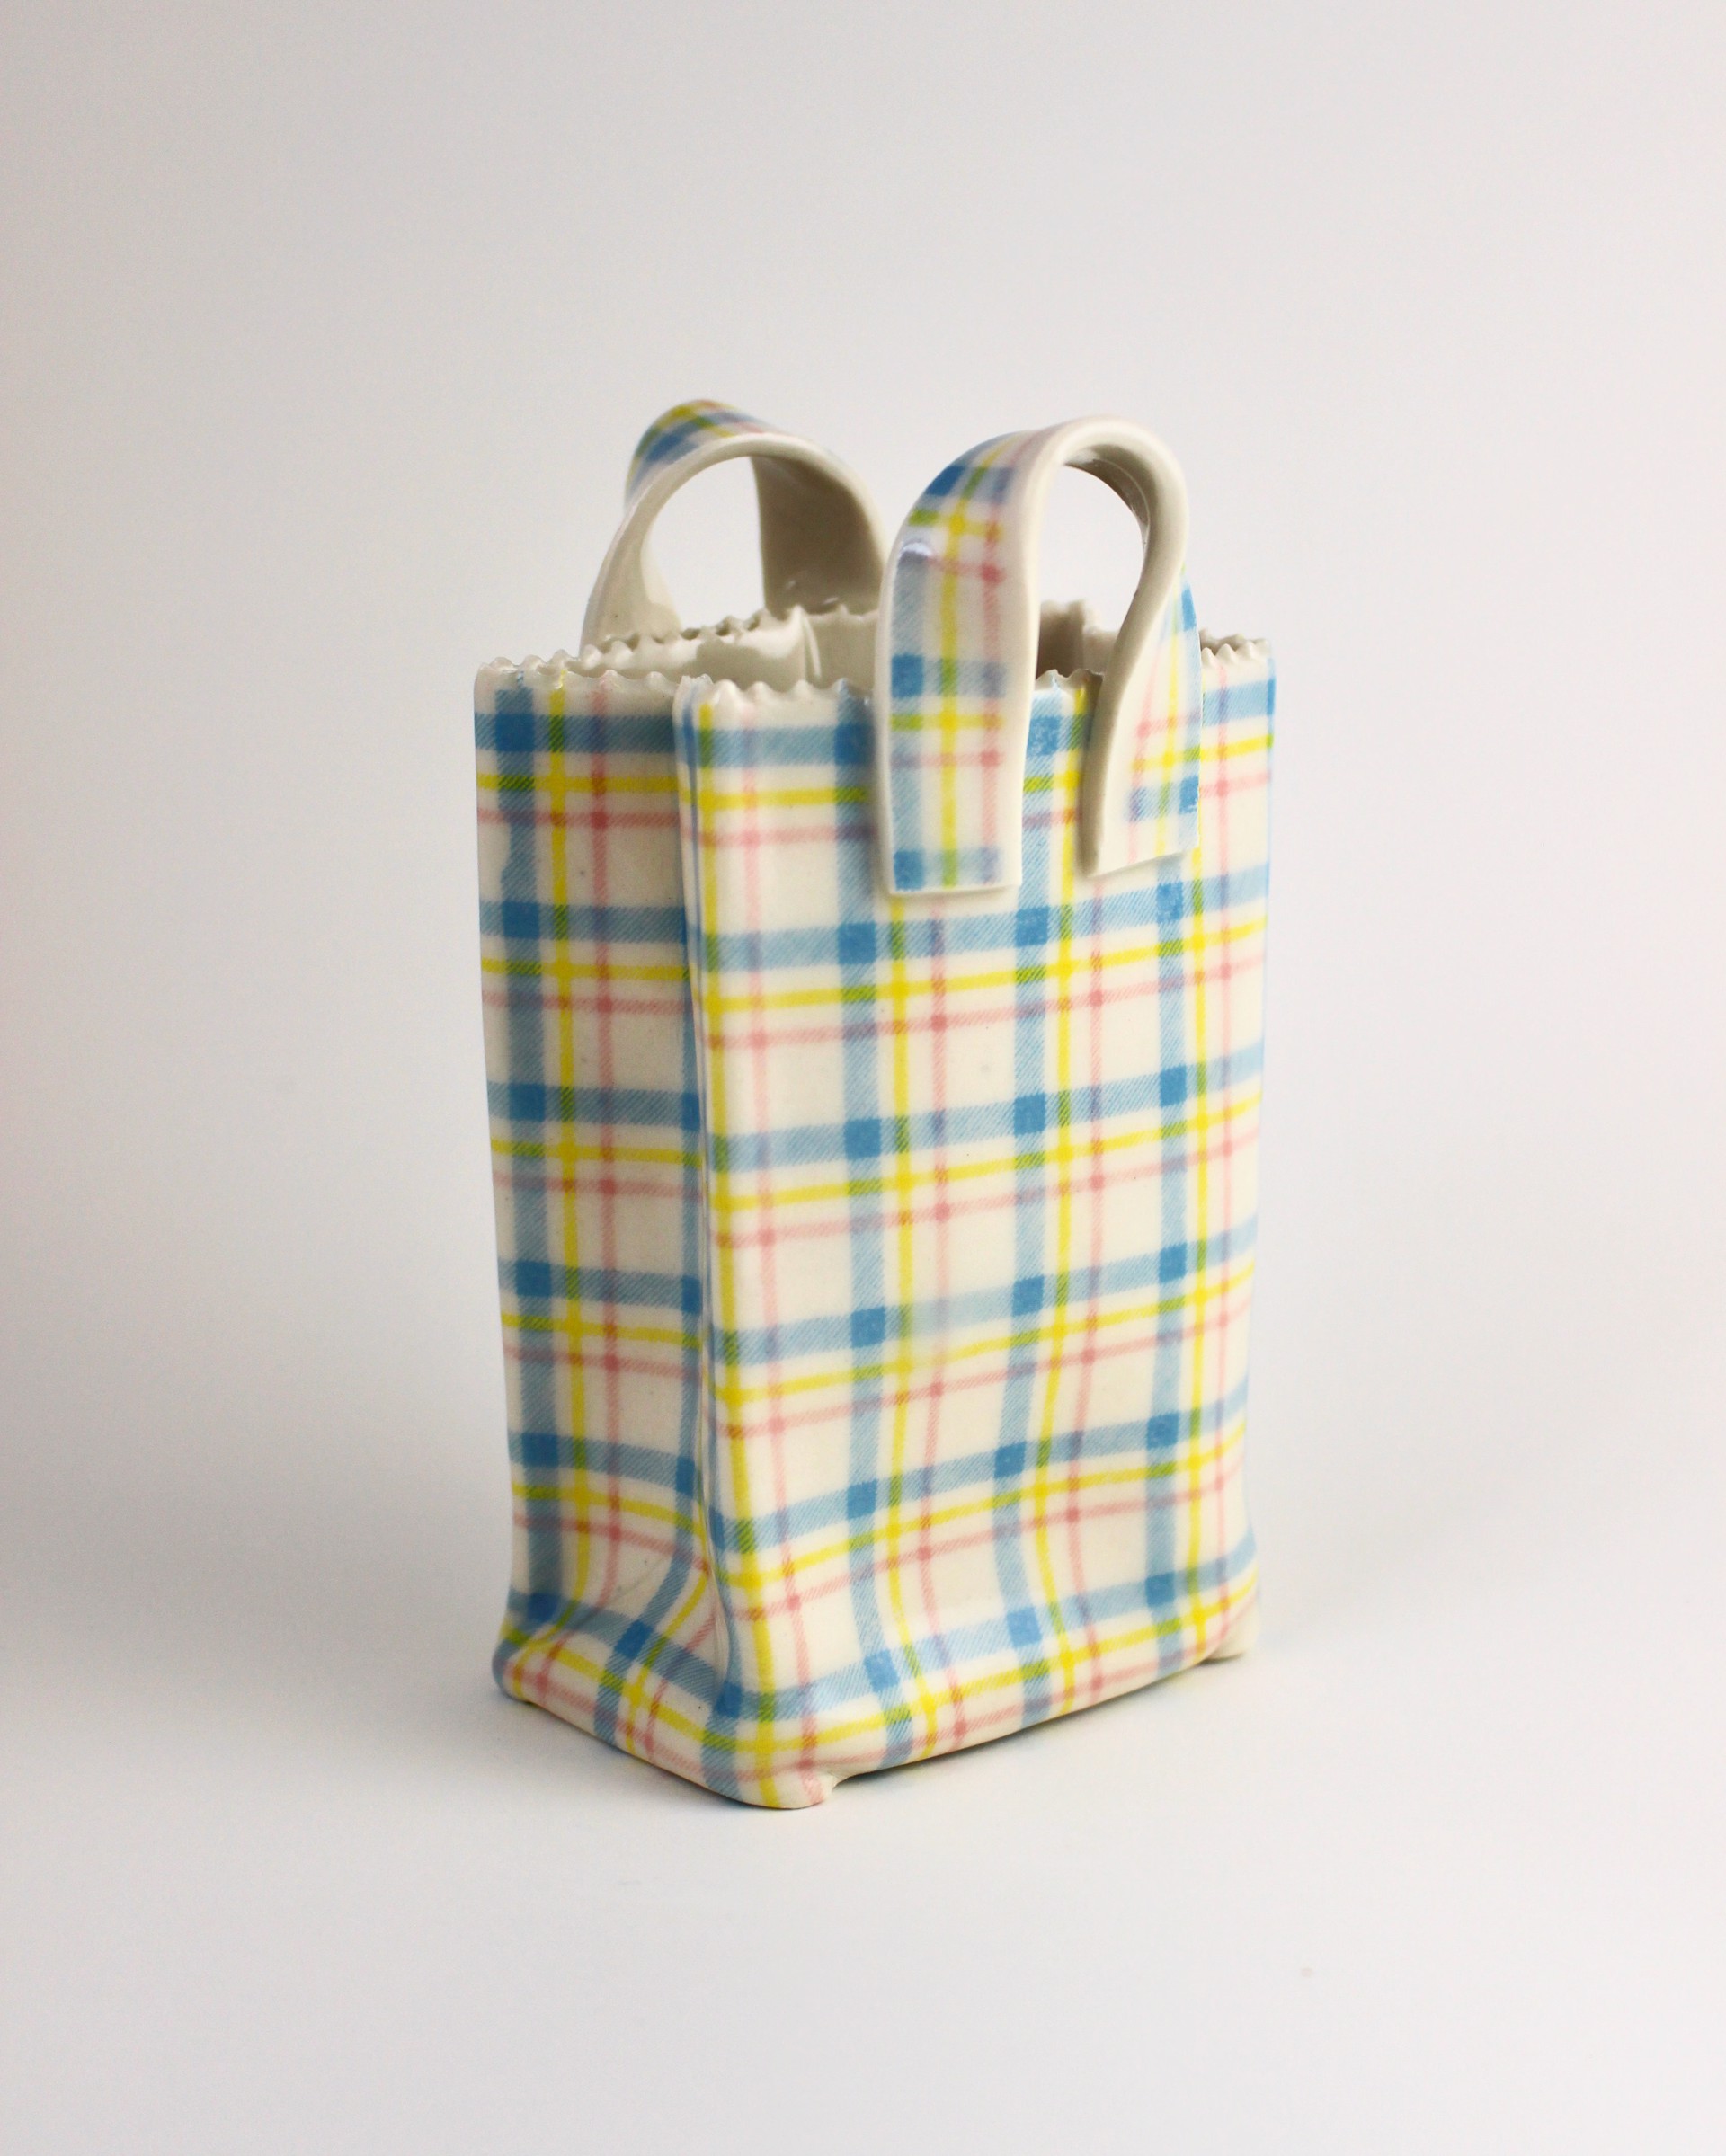 Plaid Bag with Handles, AKA Plaidles by Chandra Beadleston